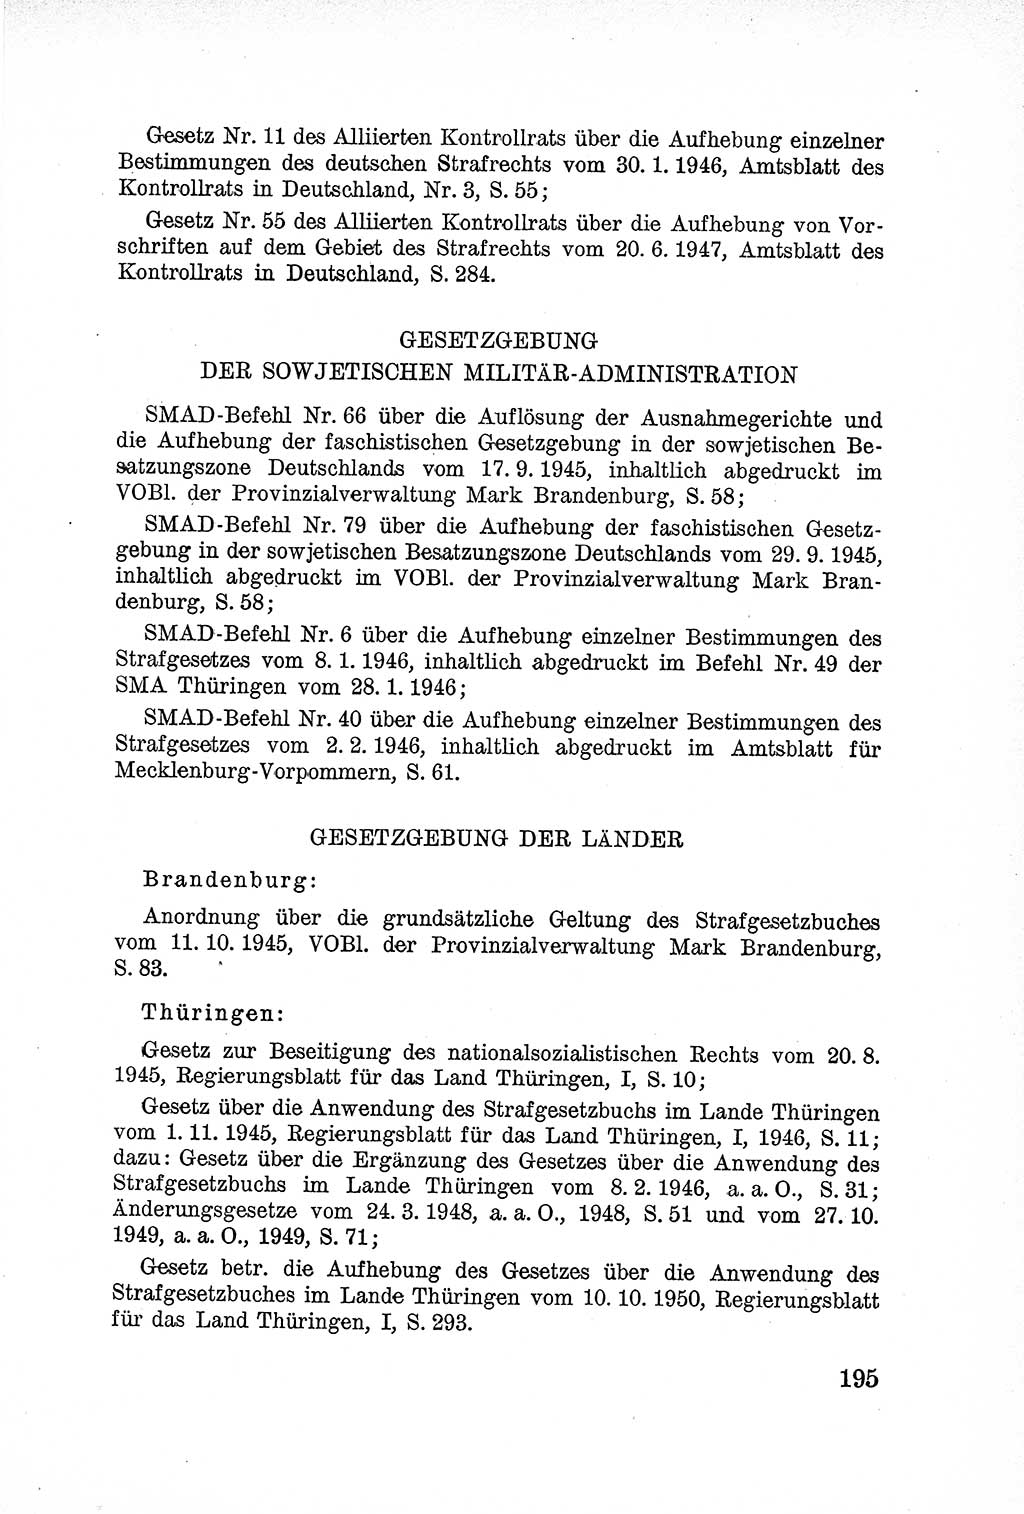 Lehrbuch des Strafrechts der Deutschen Demokratischen Republik (DDR), Allgemeiner Teil 1957, Seite 195 (Lb. Strafr. DDR AT 1957, S. 195)